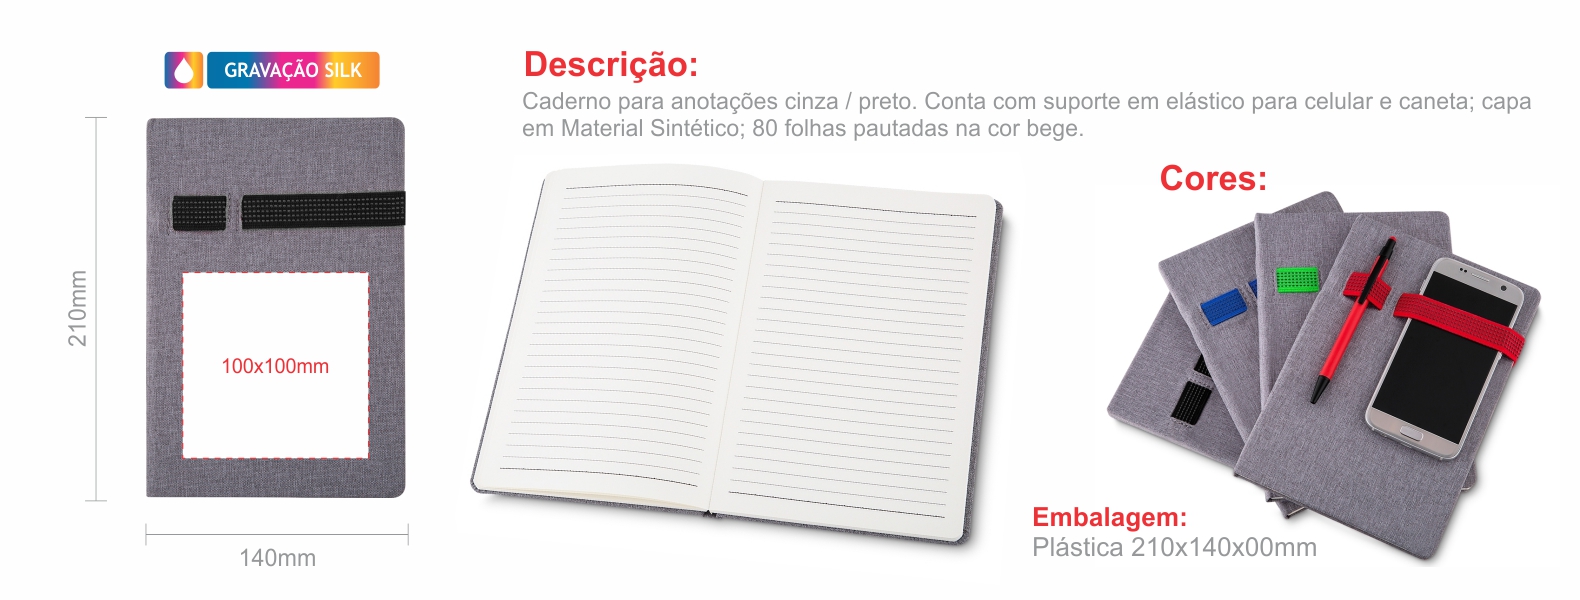 Caderno para anotações cinza / preto. Conta com suporte em elástico para celular e caneta; capa em Material Sintético; 80 folhas pautadas na cor bege.